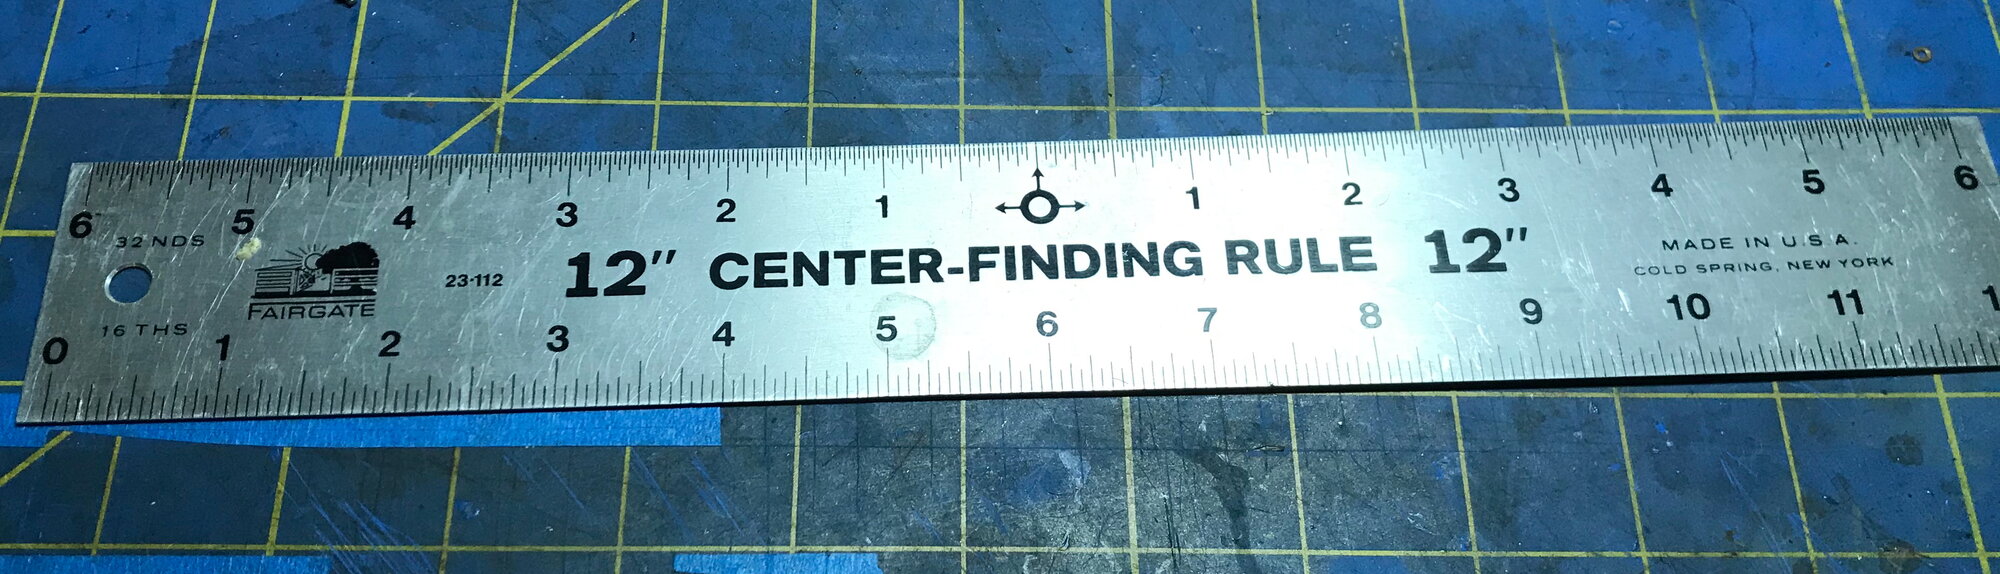 Center Finding Rule.JPG